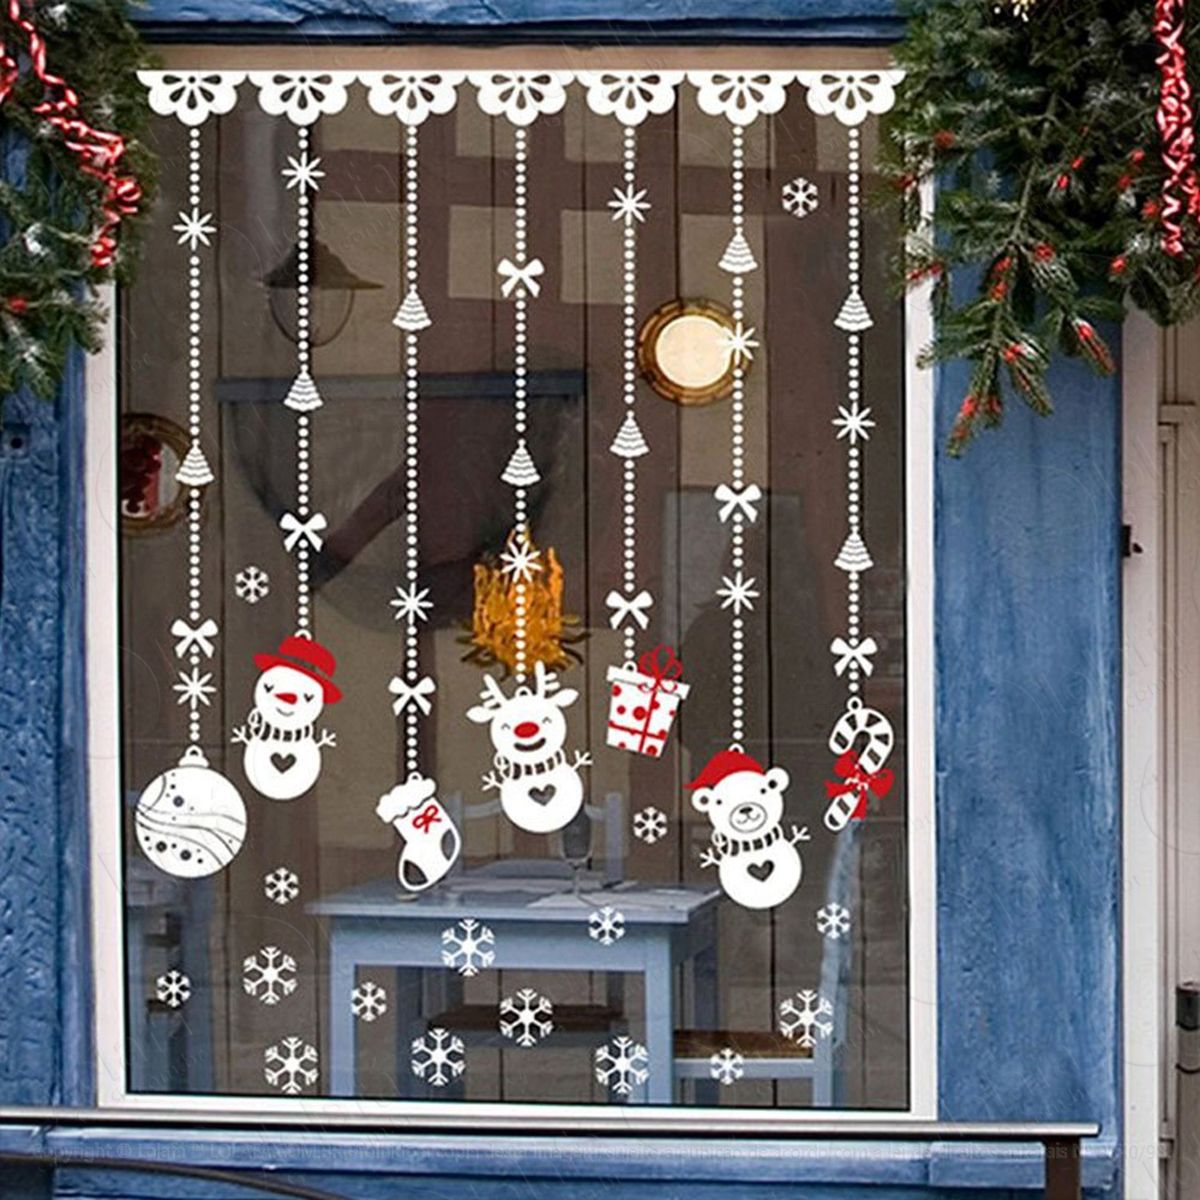 cortina adesivo de natal para vitrine, parede, porta de vidro - decoração natalina mod:76